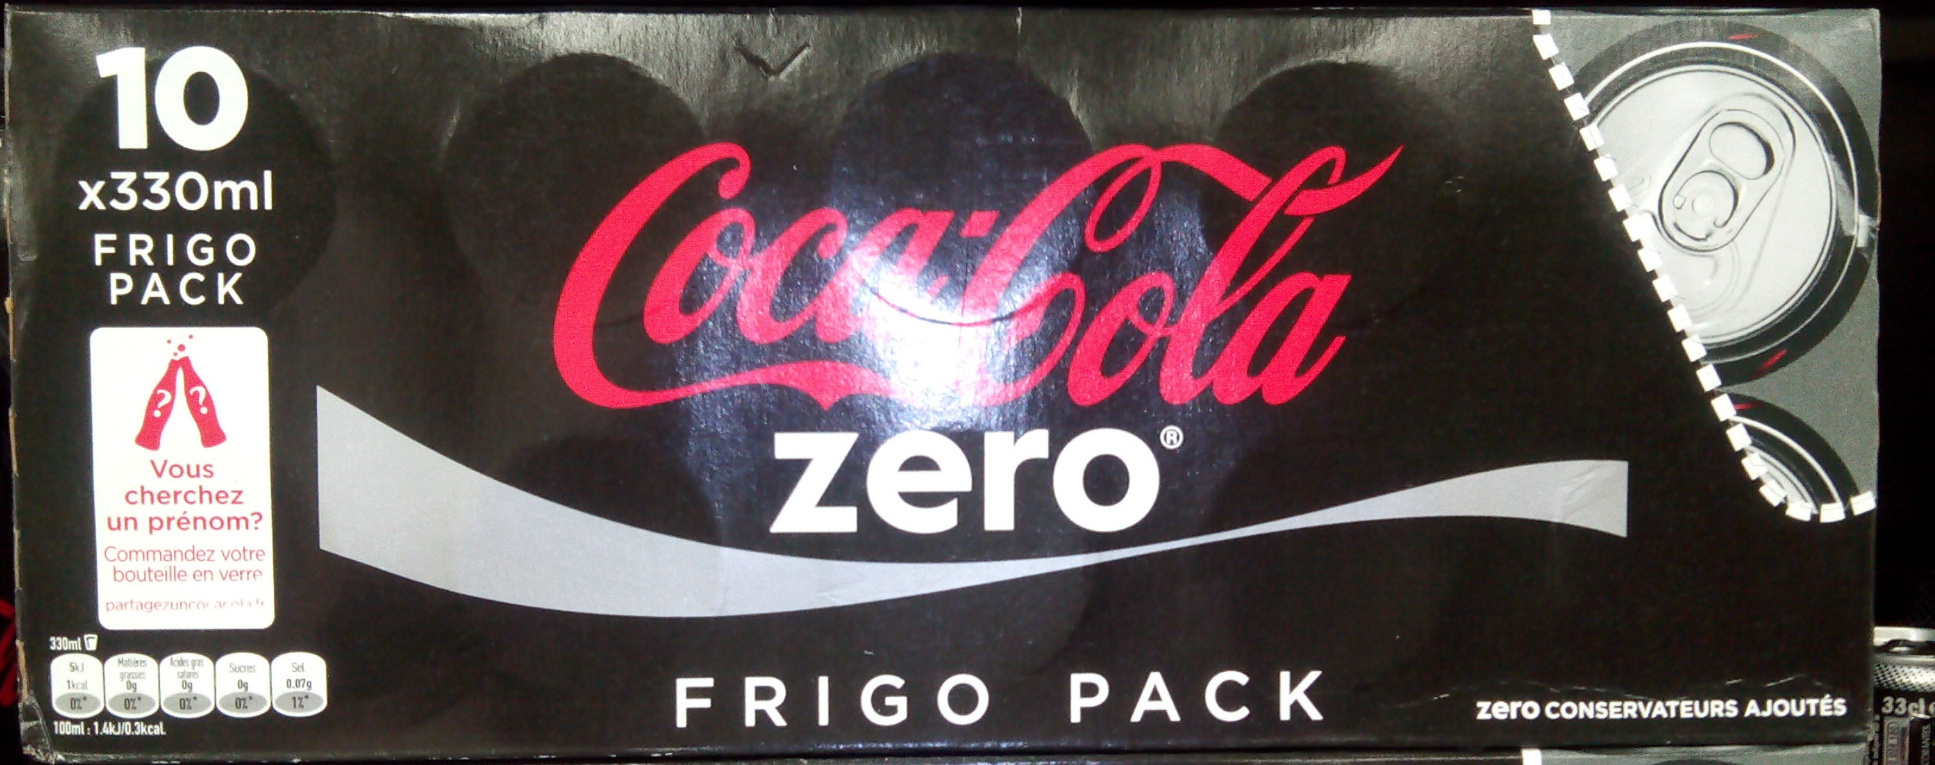 Coca cola zero® frigo pack - Product - fr